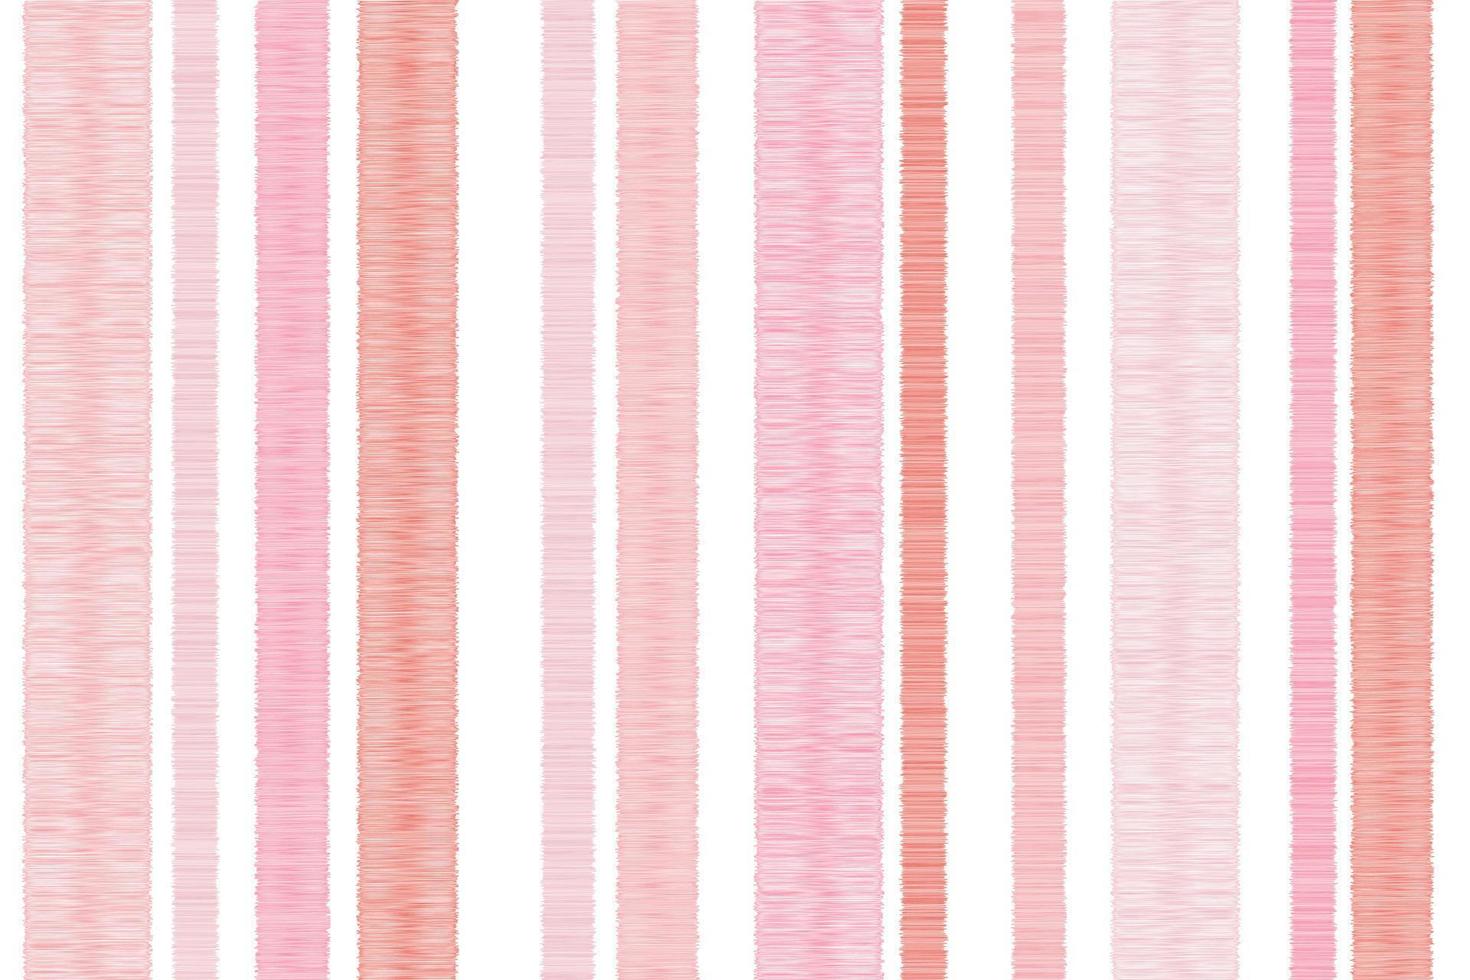 vetor sem costura ikat fundo rosa branco padrão de tecido listra padrões de listras desequilibradas listras verticais de cor pastel vermelho rosa bonito grade de tamanho diferente para o padrão de tecido de amor do dia dos namorados.